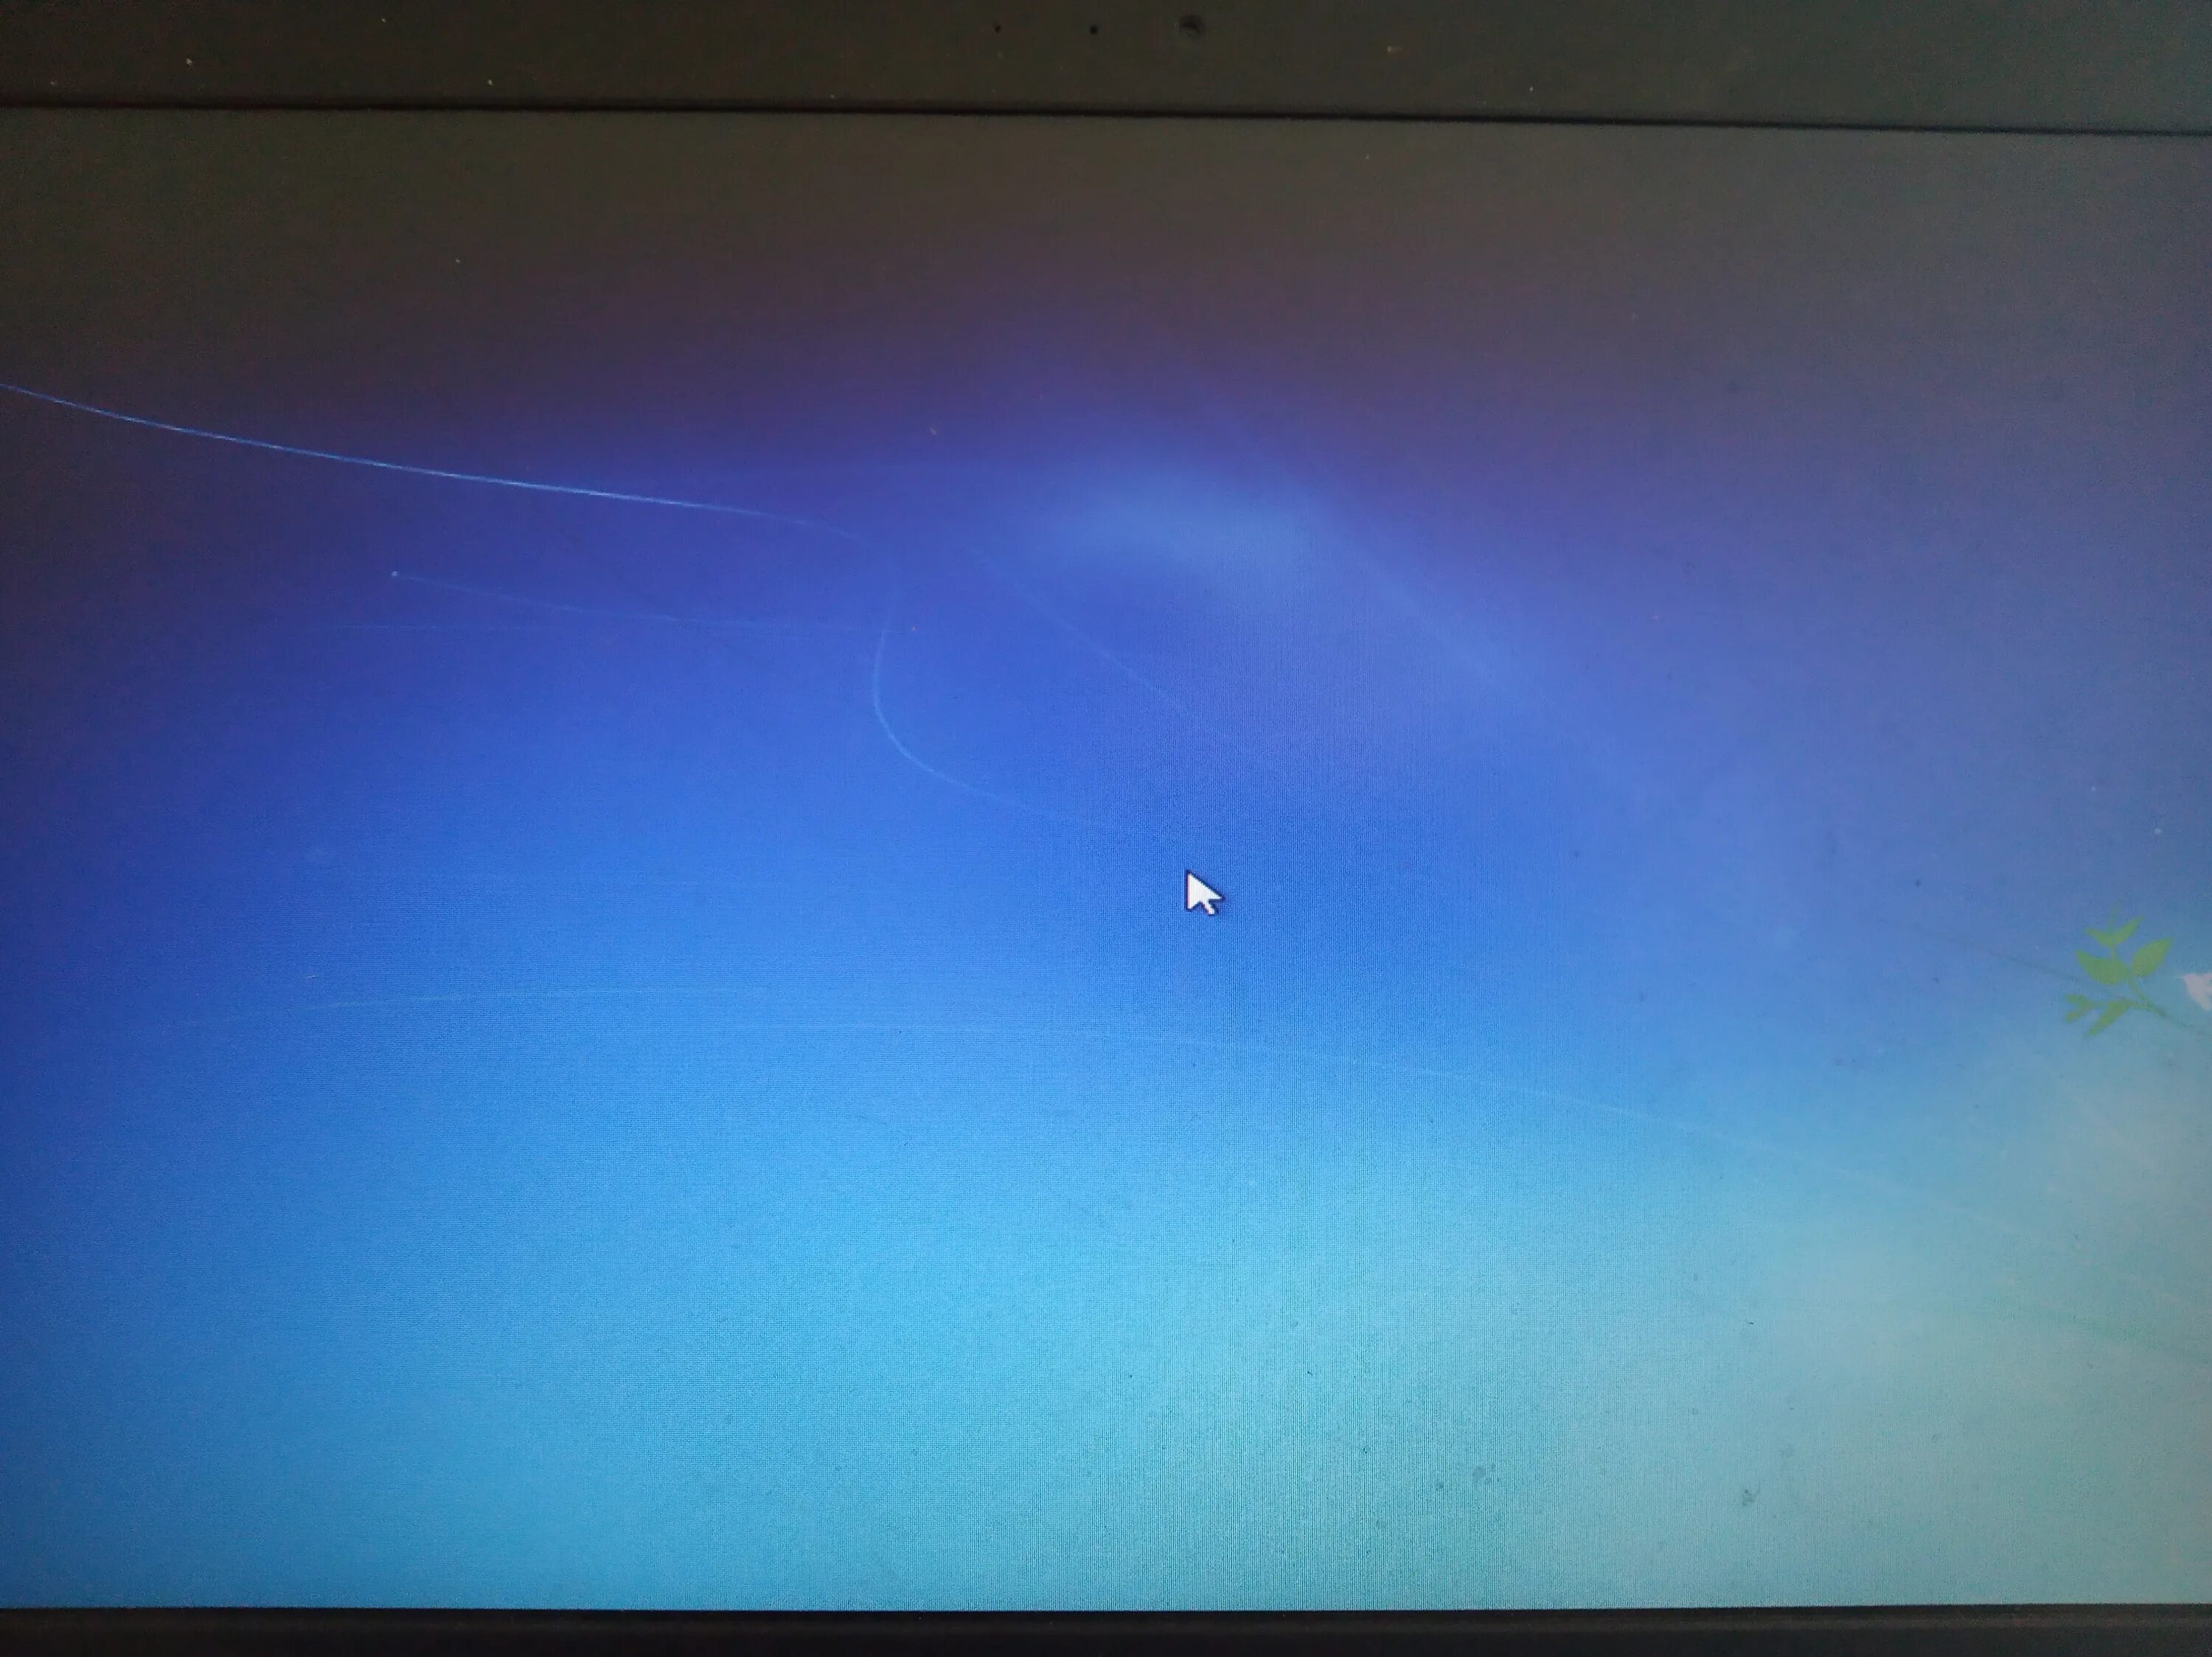 Windows 7 зависает. Фото неипрогружается картинка. Фото не прогружается картинка. Windows 10 мутное изображение. Не включается дальше заставки